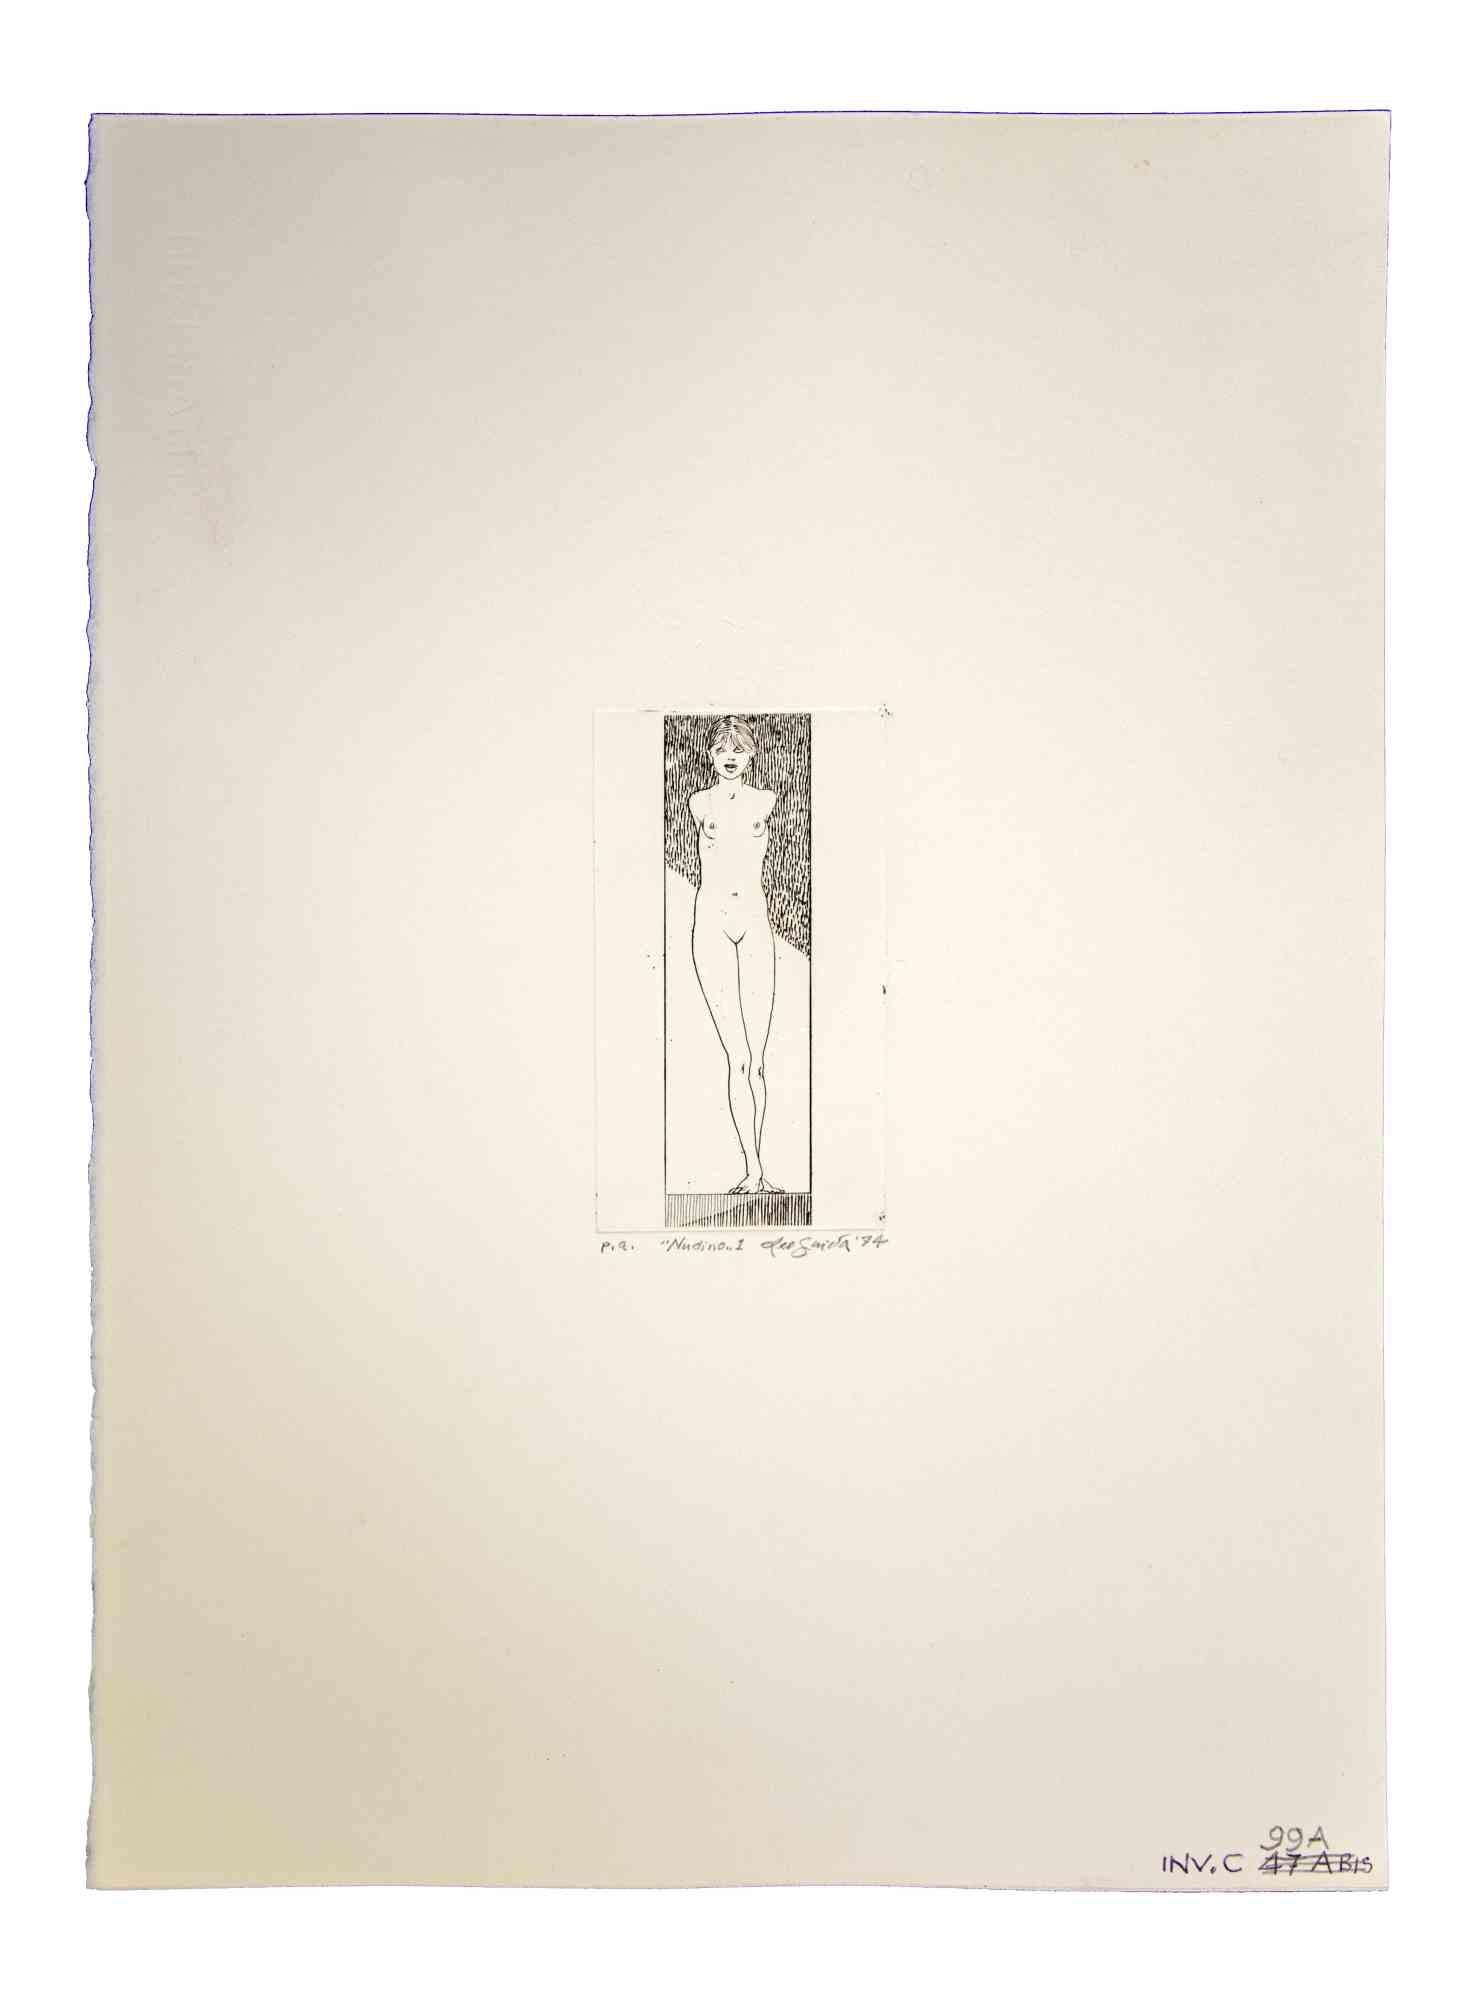 Nudino ist ein originales zeitgenössisches Kunstwerk, das 1974 von dem italienischen zeitgenössischen Künstler  Leo Guida  (1992 - 2017).

Original-Radierung auf Papier

Rechts unten mit Bleistift handsigniert und datiert.

Probedruck des Künstlers,